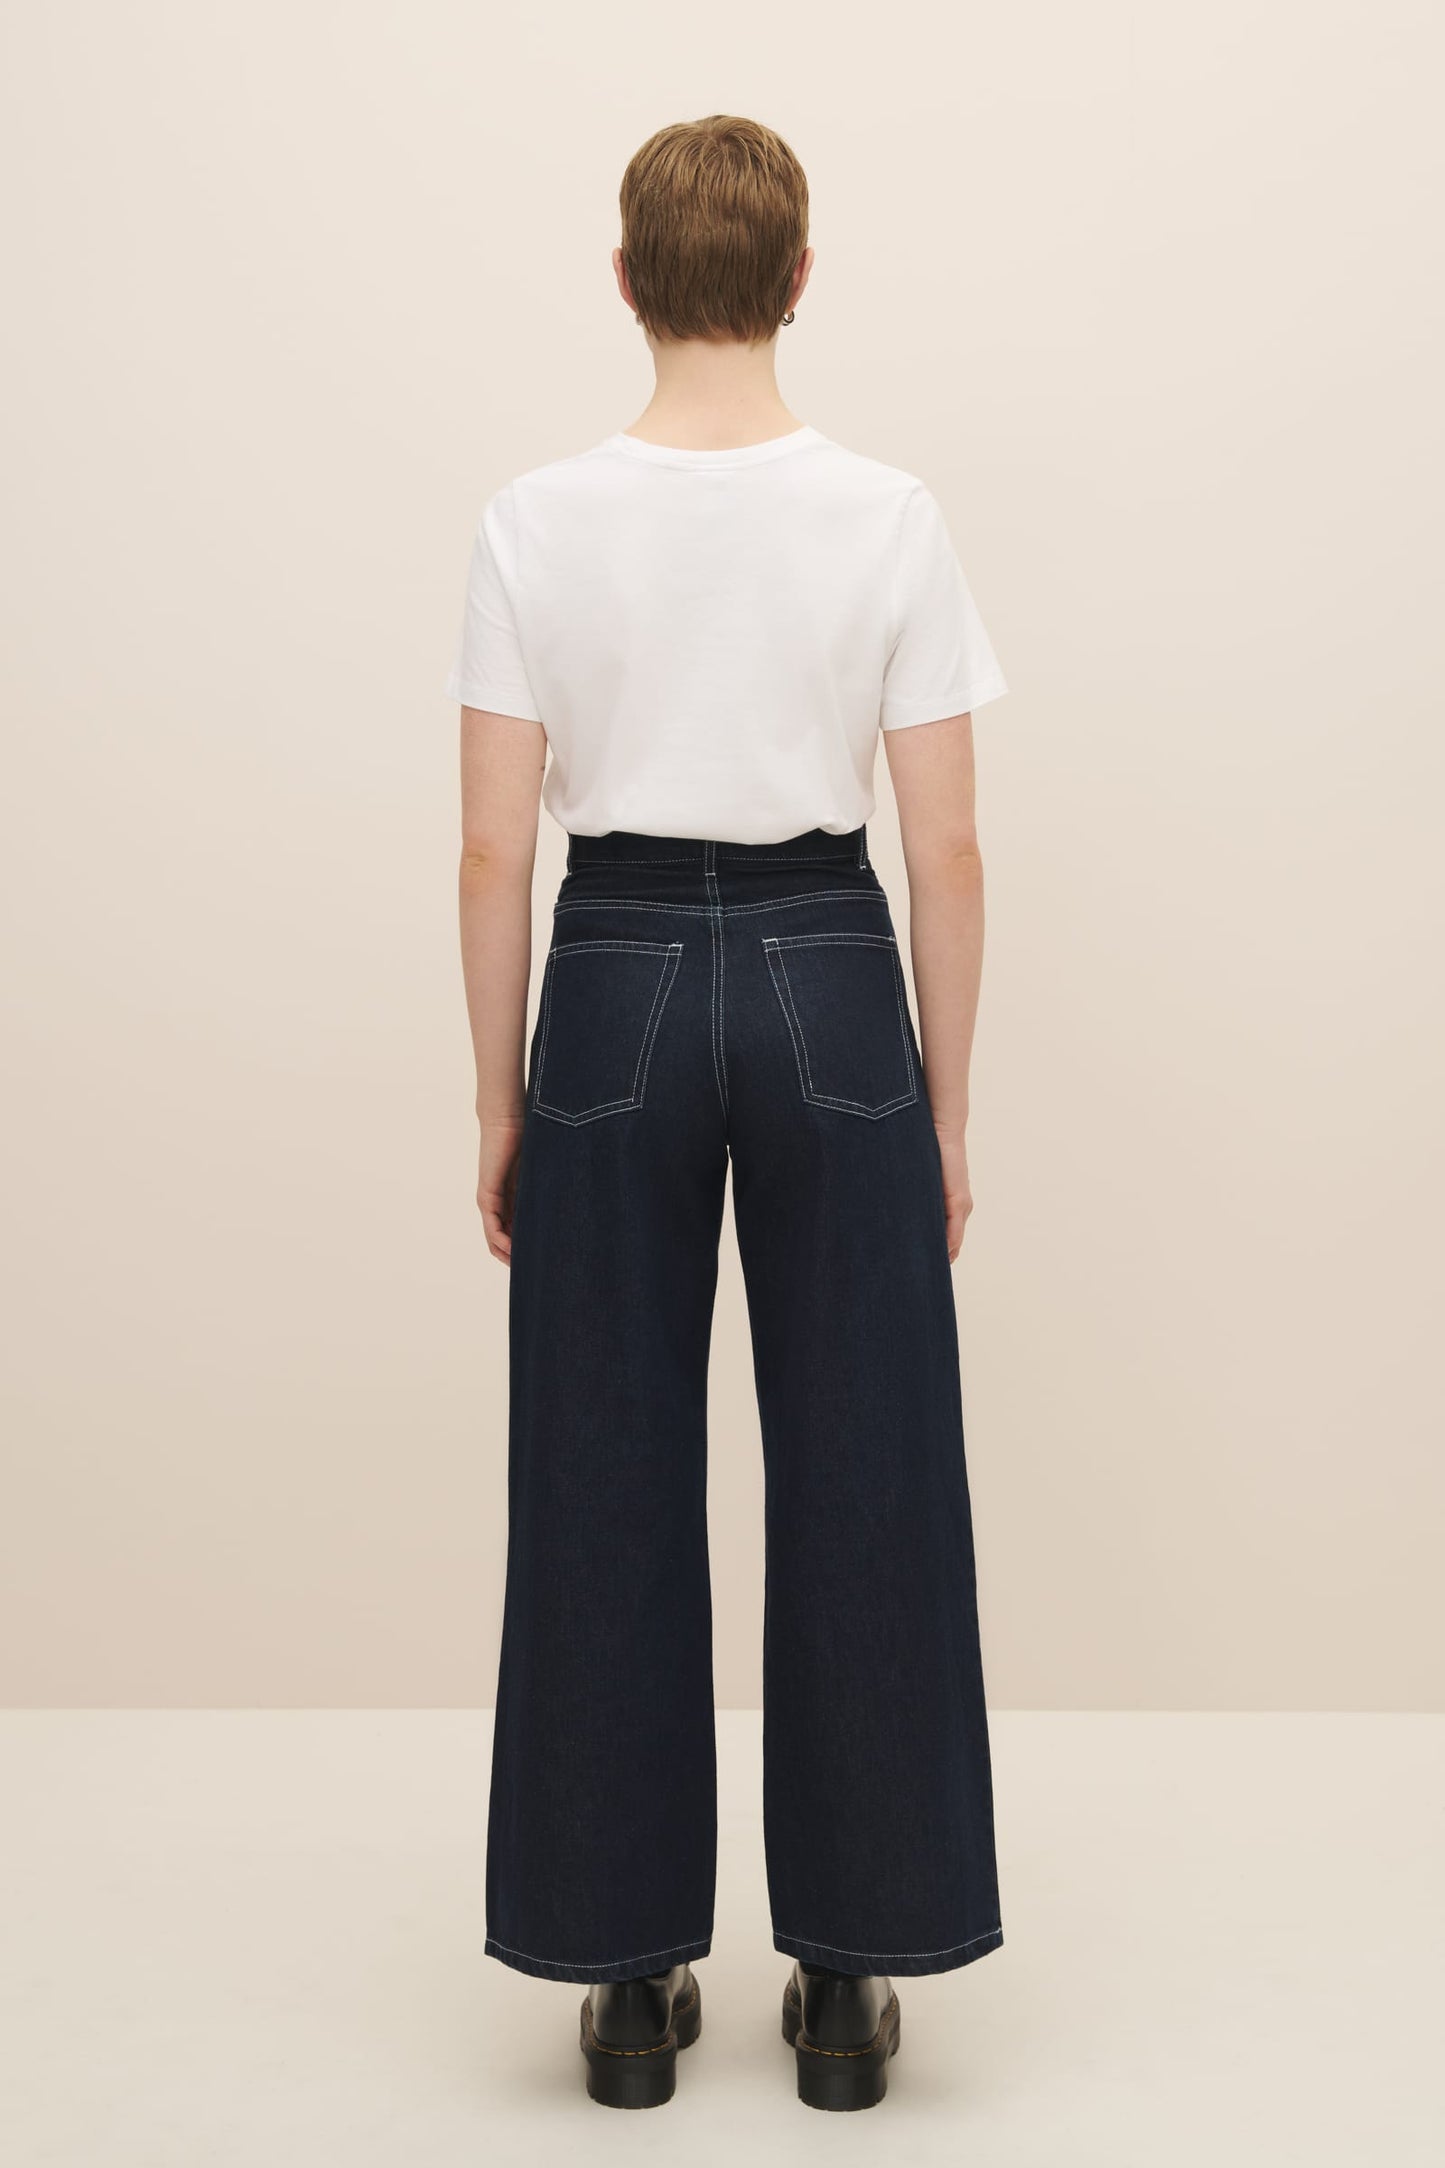 Shop Sailor Jeans - Ecru Denim, Kowtow Clothing